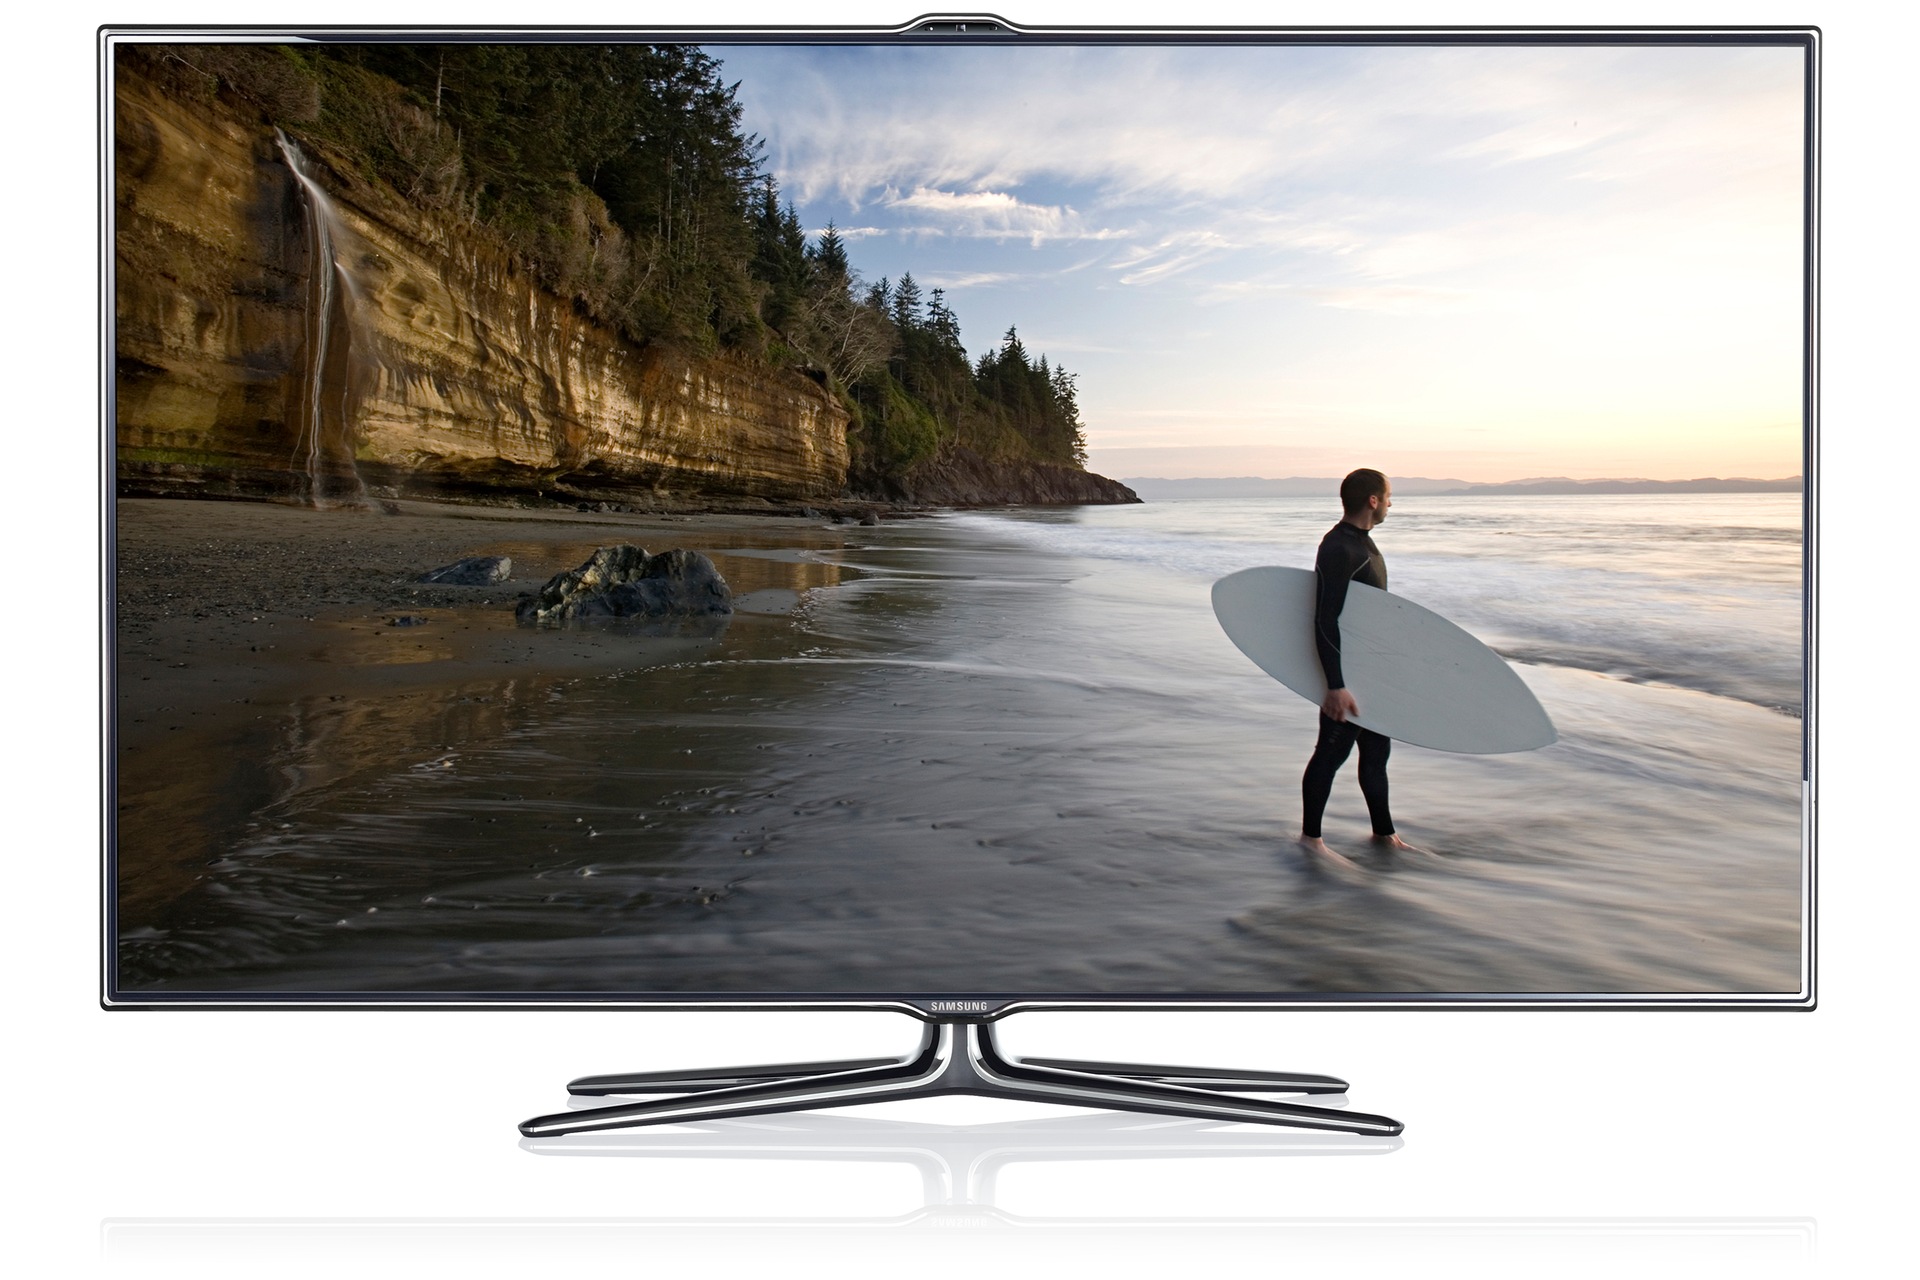 Bedienungsanleitung Samsung Ue55ju6485u Led Tv Flat 55 Zoll Uhd 4k Smart Tv Bedienungsanleitung